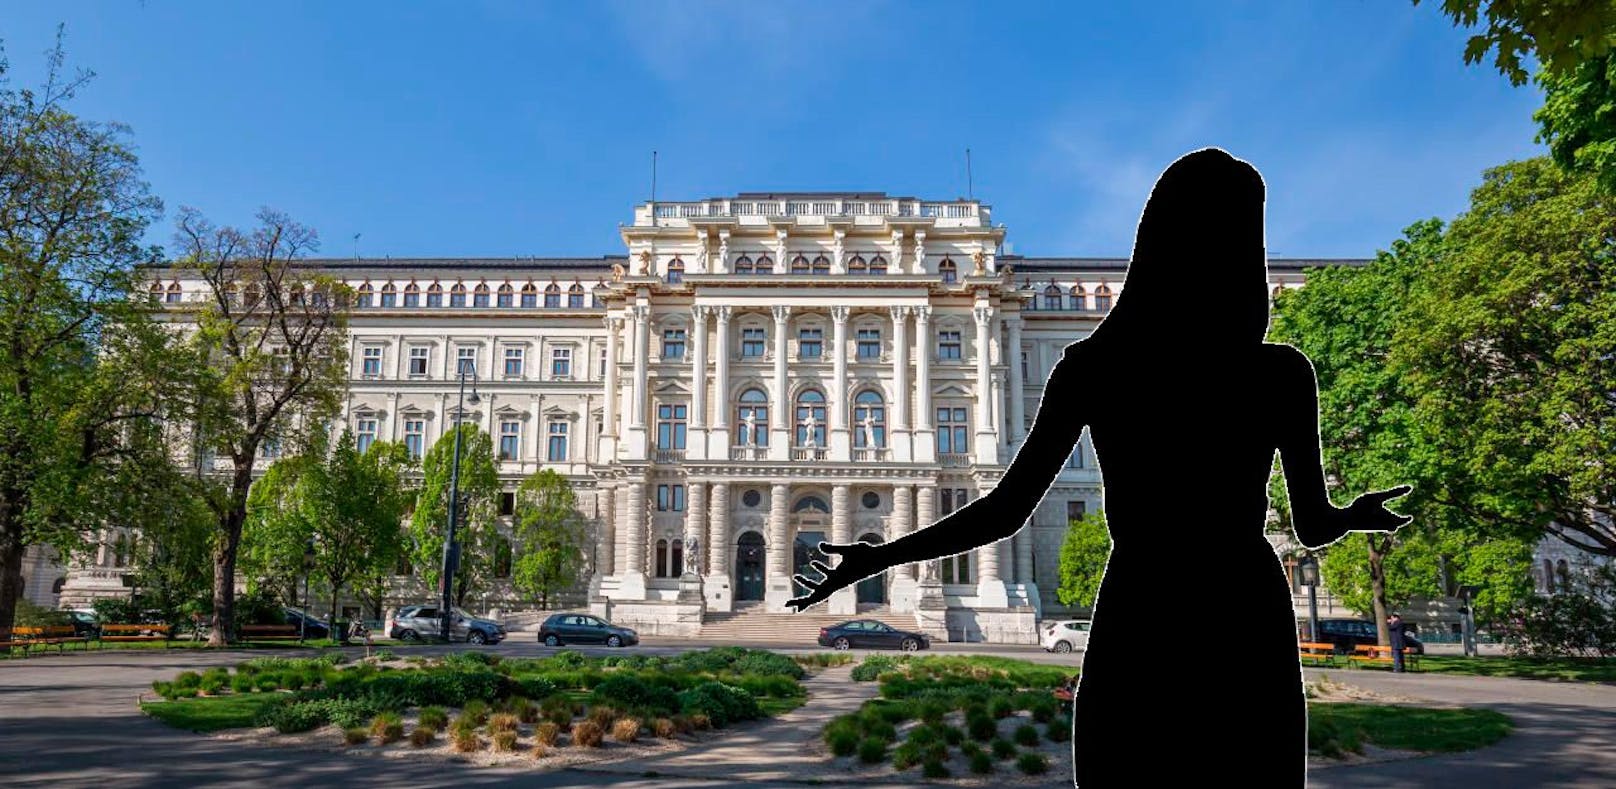 Eine Mutter wurde von ihrem Sohn geklagt. Weil sie eine Phobie hat, kann sie den Wiener Justizpalast nicht betreten.